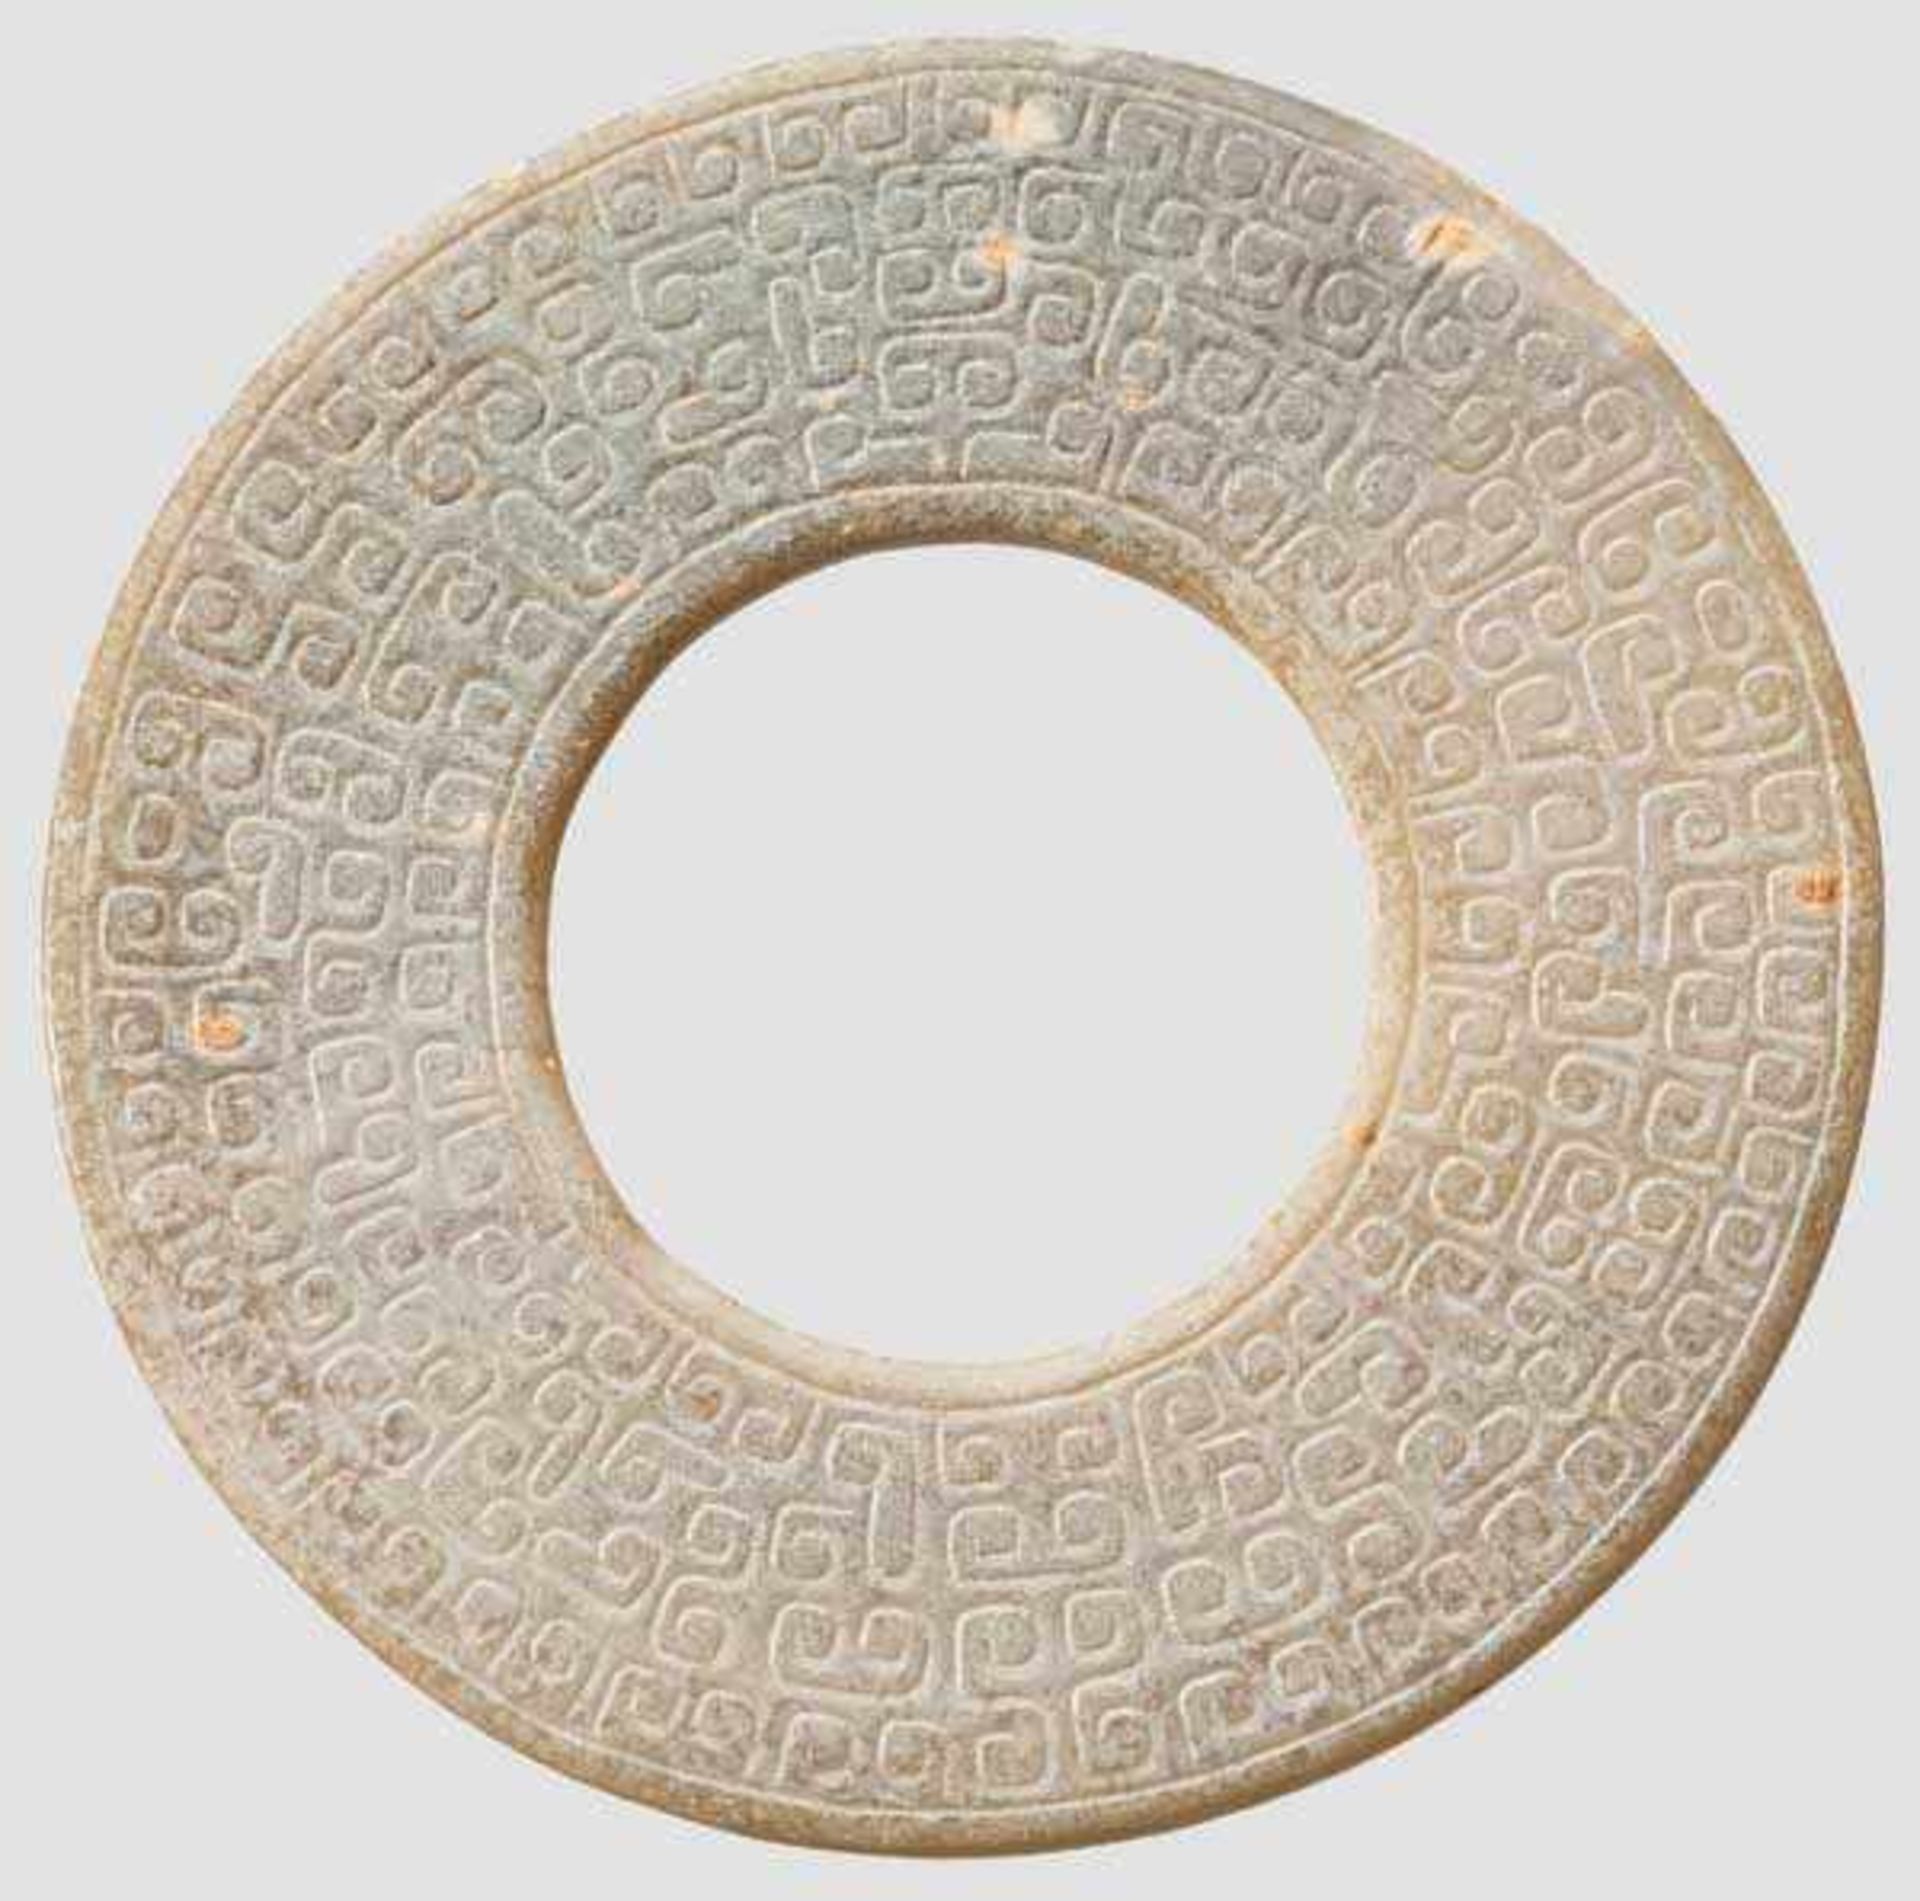 Bi-Scheibe, China, Zeit der streitenden Reiche, 4./3. Jhdt. v. Chr. Flache Scheibe aus gelblich- - Bild 2 aus 2